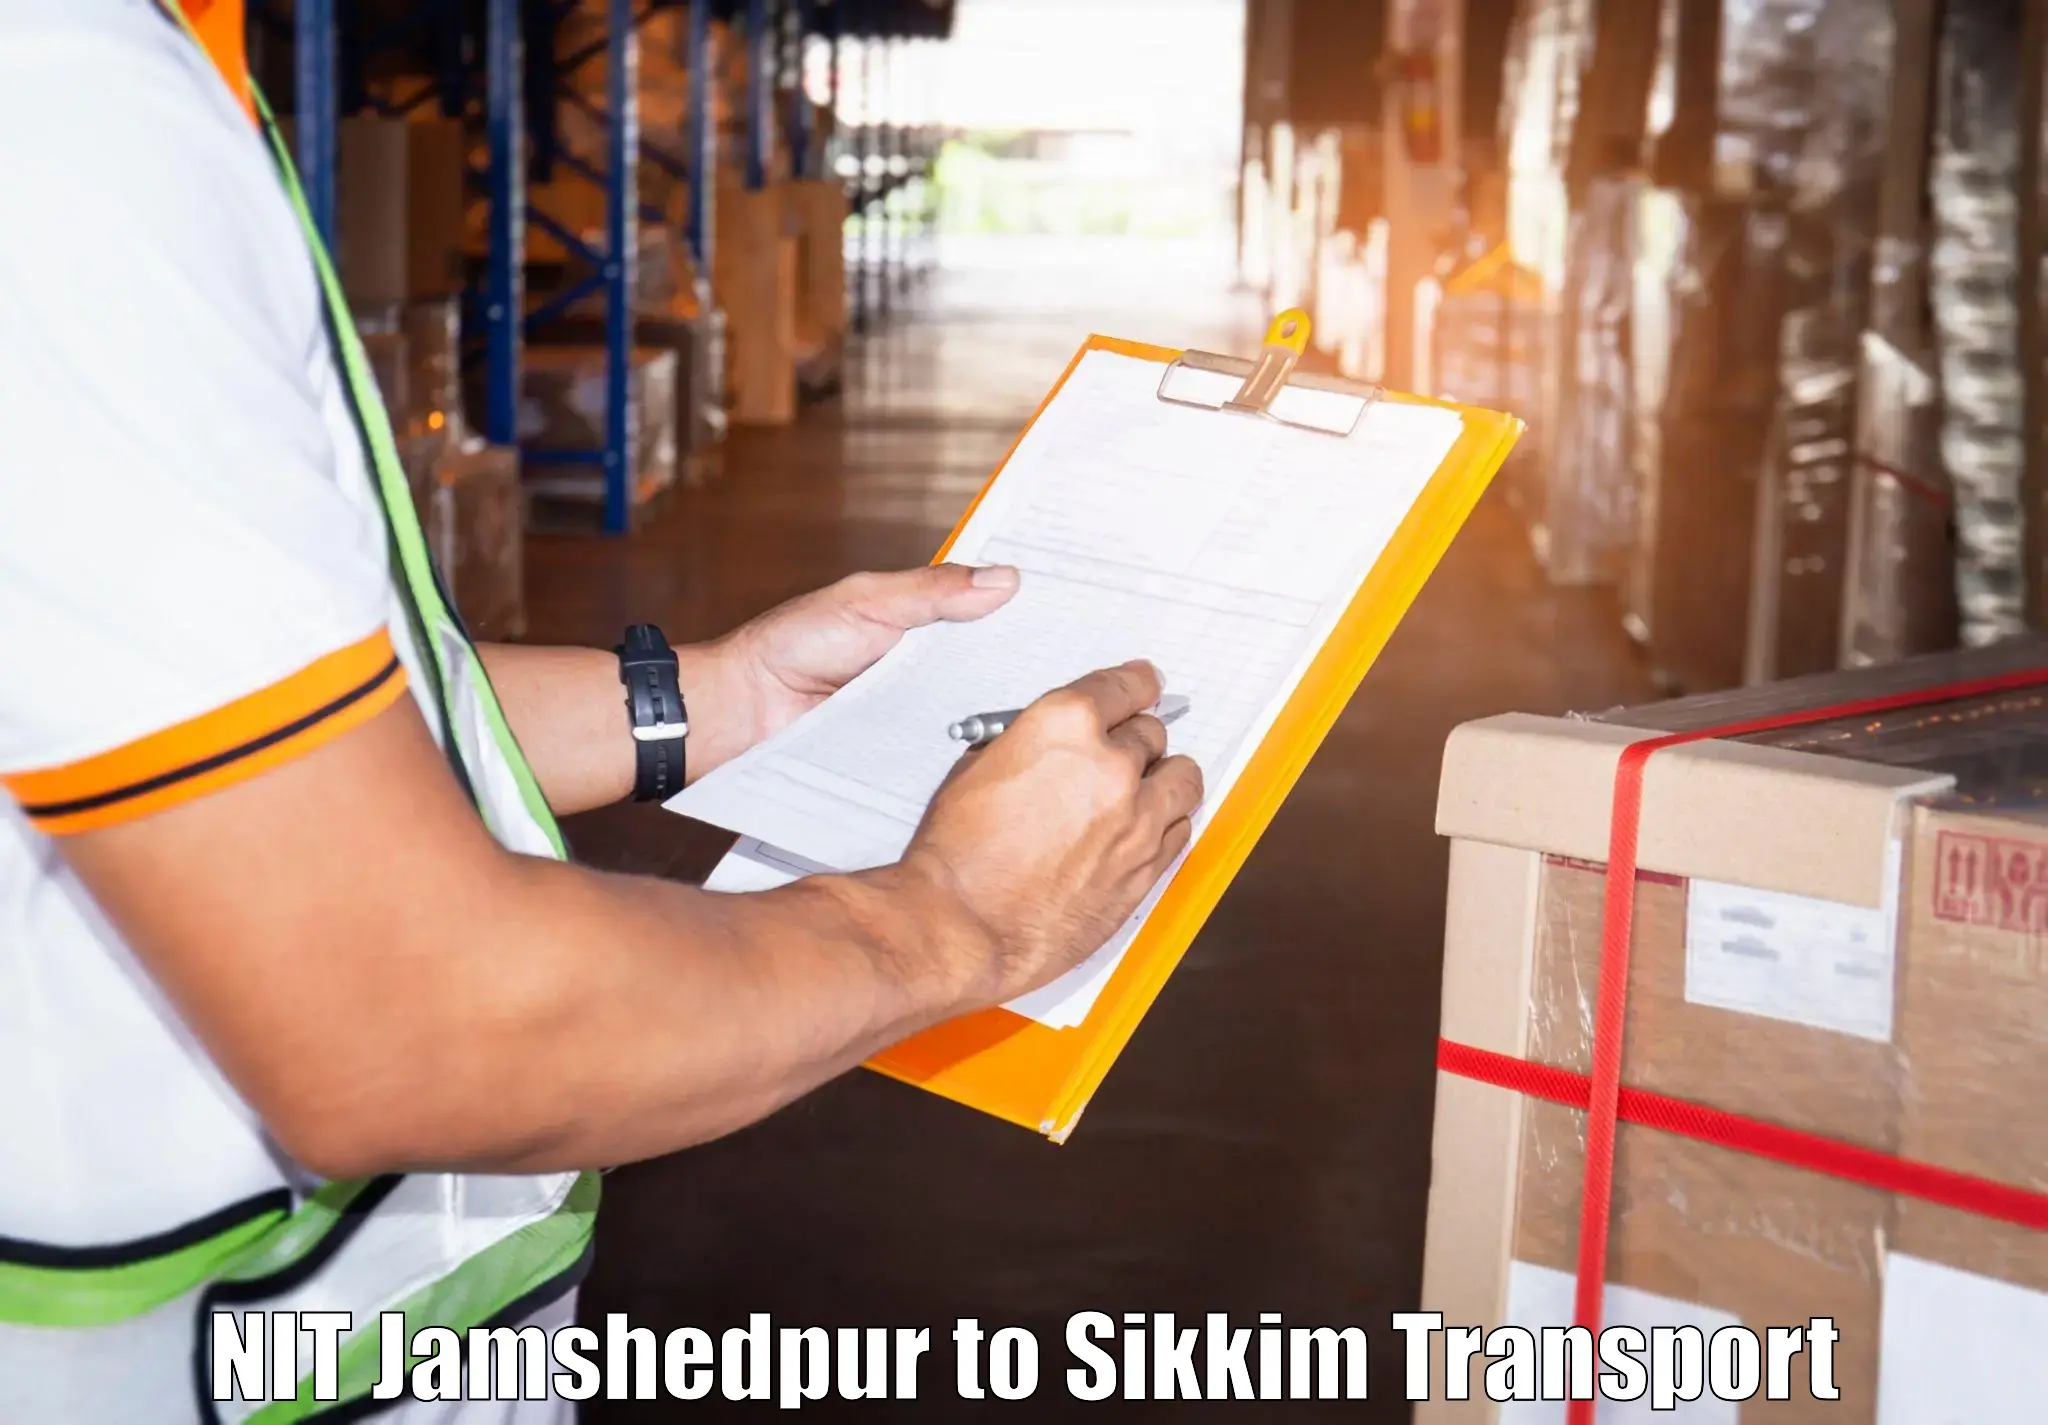 Furniture transport service NIT Jamshedpur to East Sikkim